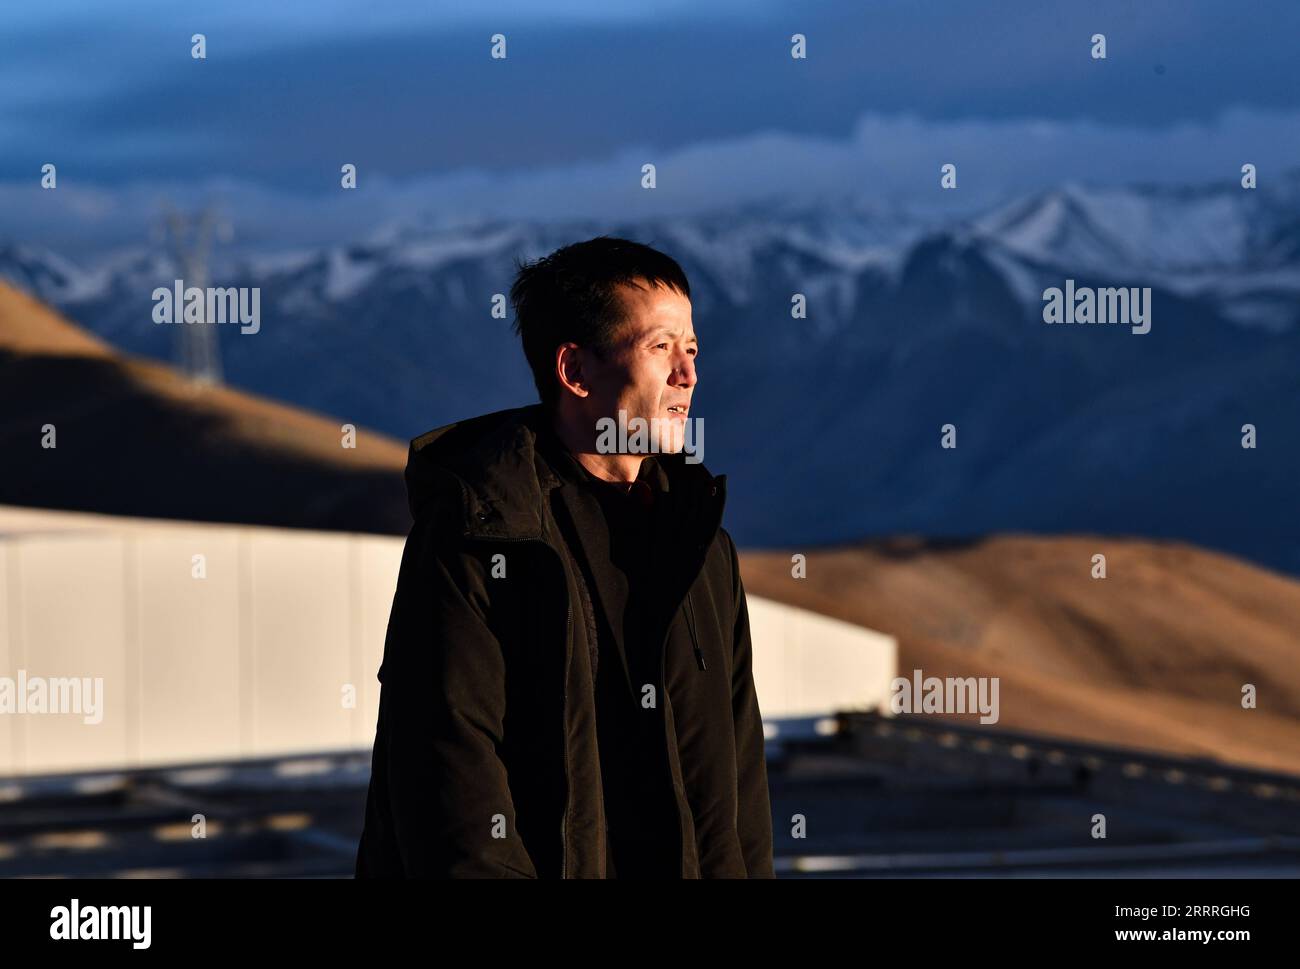 230528 -- NGARI, 28 maggio 2023 -- Xianlong guarda in lontananza all'Osservatorio di Ngari nella prefettura di Ngari, nella regione autonoma del Tibet della Cina sud-occidentale, 24 maggio 2023. Xianlong, un ingegnere residente di 36 anni presso l'Osservatorio di Ngari nella regione autonoma del Tibet, è responsabile dell'osservazione delle apparecchiature e della manutenzione operativa insieme a sette colleghi. È anche l'ingegnere più longevo presso l'osservatorio. La sua carriera è iniziata nel 2006 quando ha incontrato Yao Yongqiang, uno scienziato presso gli osservatori astronomici nazionali sotto la Chinese Academy of Sciences CAS, che stava cercando Foto Stock